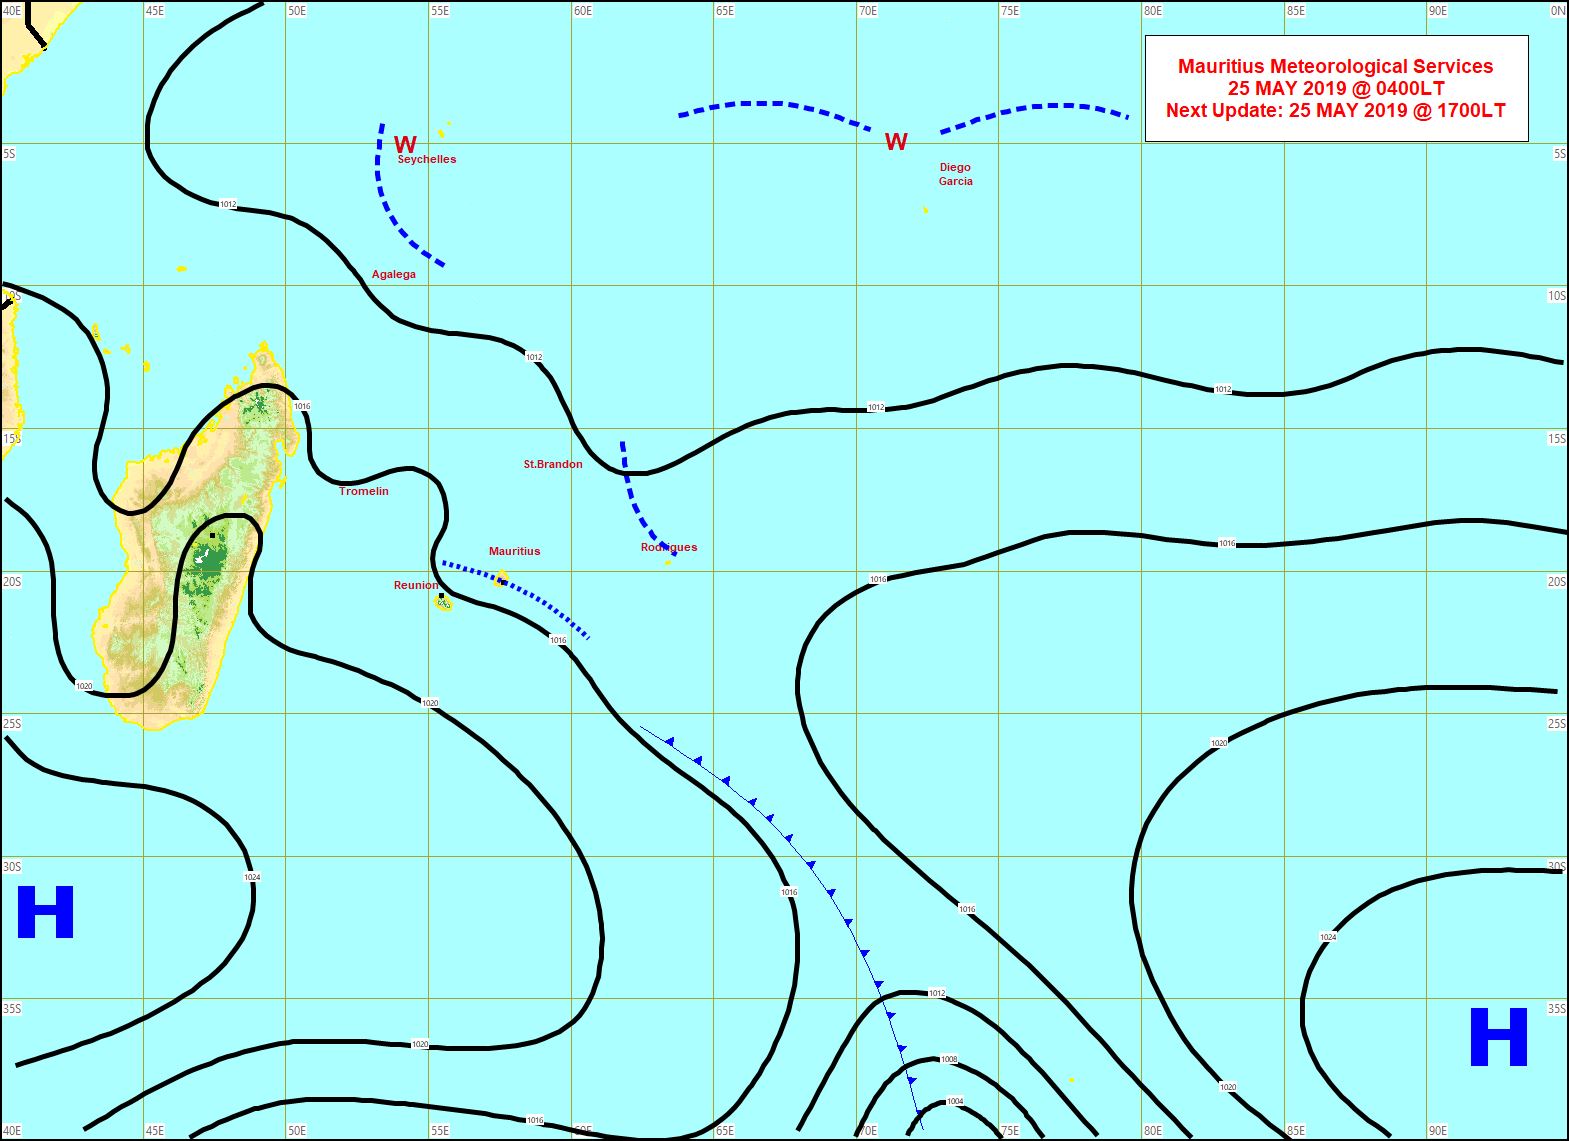 Situation en surface. Analyse de MMS à 4heures ce matin. L'anticyclone au sud de MADA évolue peu. Limite frontale très atténuée à proximité de MAURICE. Vents de sud-est s'établissant sur les Iles Soeurs. Une ligne d'instabilité se trouve a proximité de RODRIGUES.